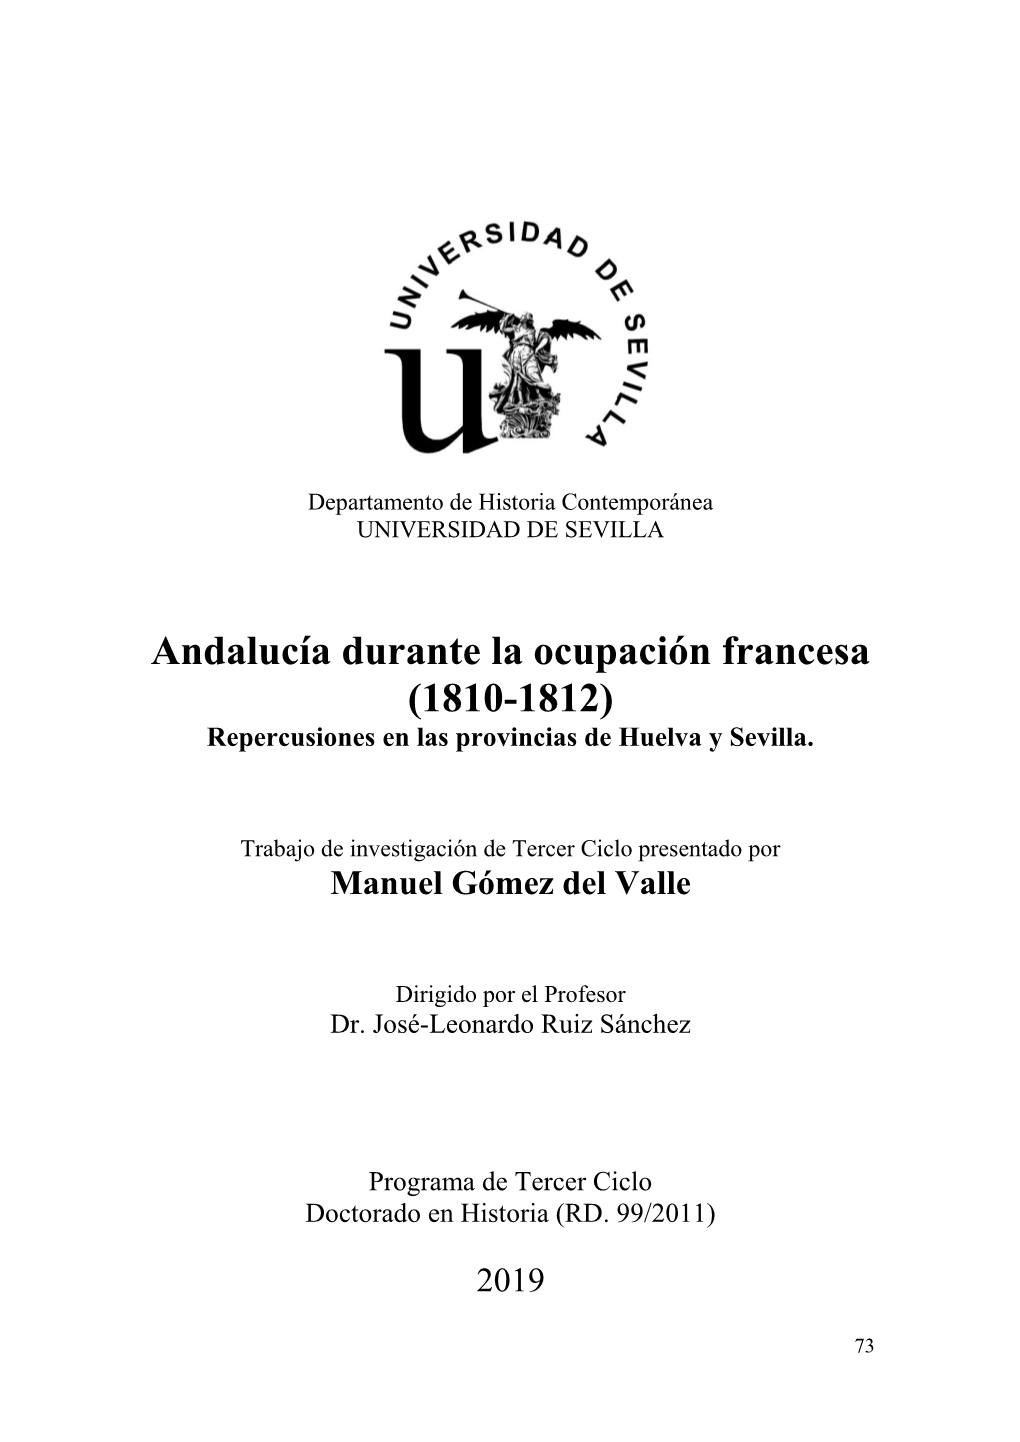 Andalucía Durante La Ocupación Francesa (1810-1812) Repercusiones En Las Provincias De Huelva Y Sevilla